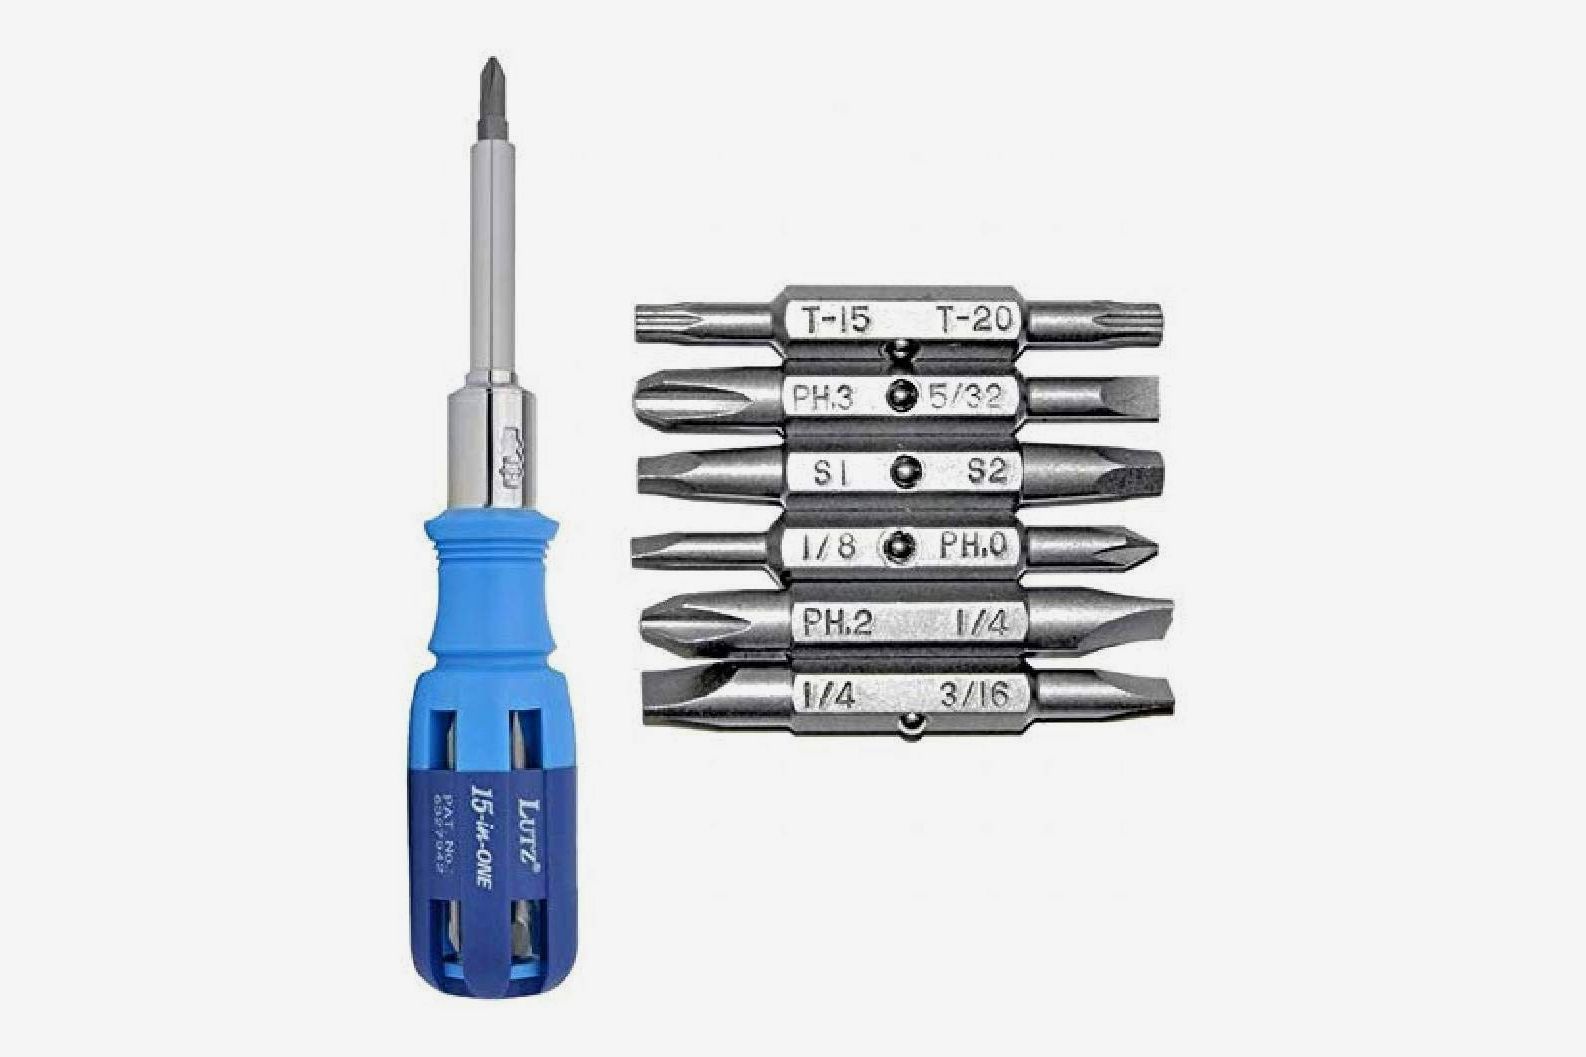 Convenient Family Must-Have Repair Tool Professional Durable Repair Tool Open Tool 1.2 X 25mm Cross Tip Socket Metal Screwdriver for Phone